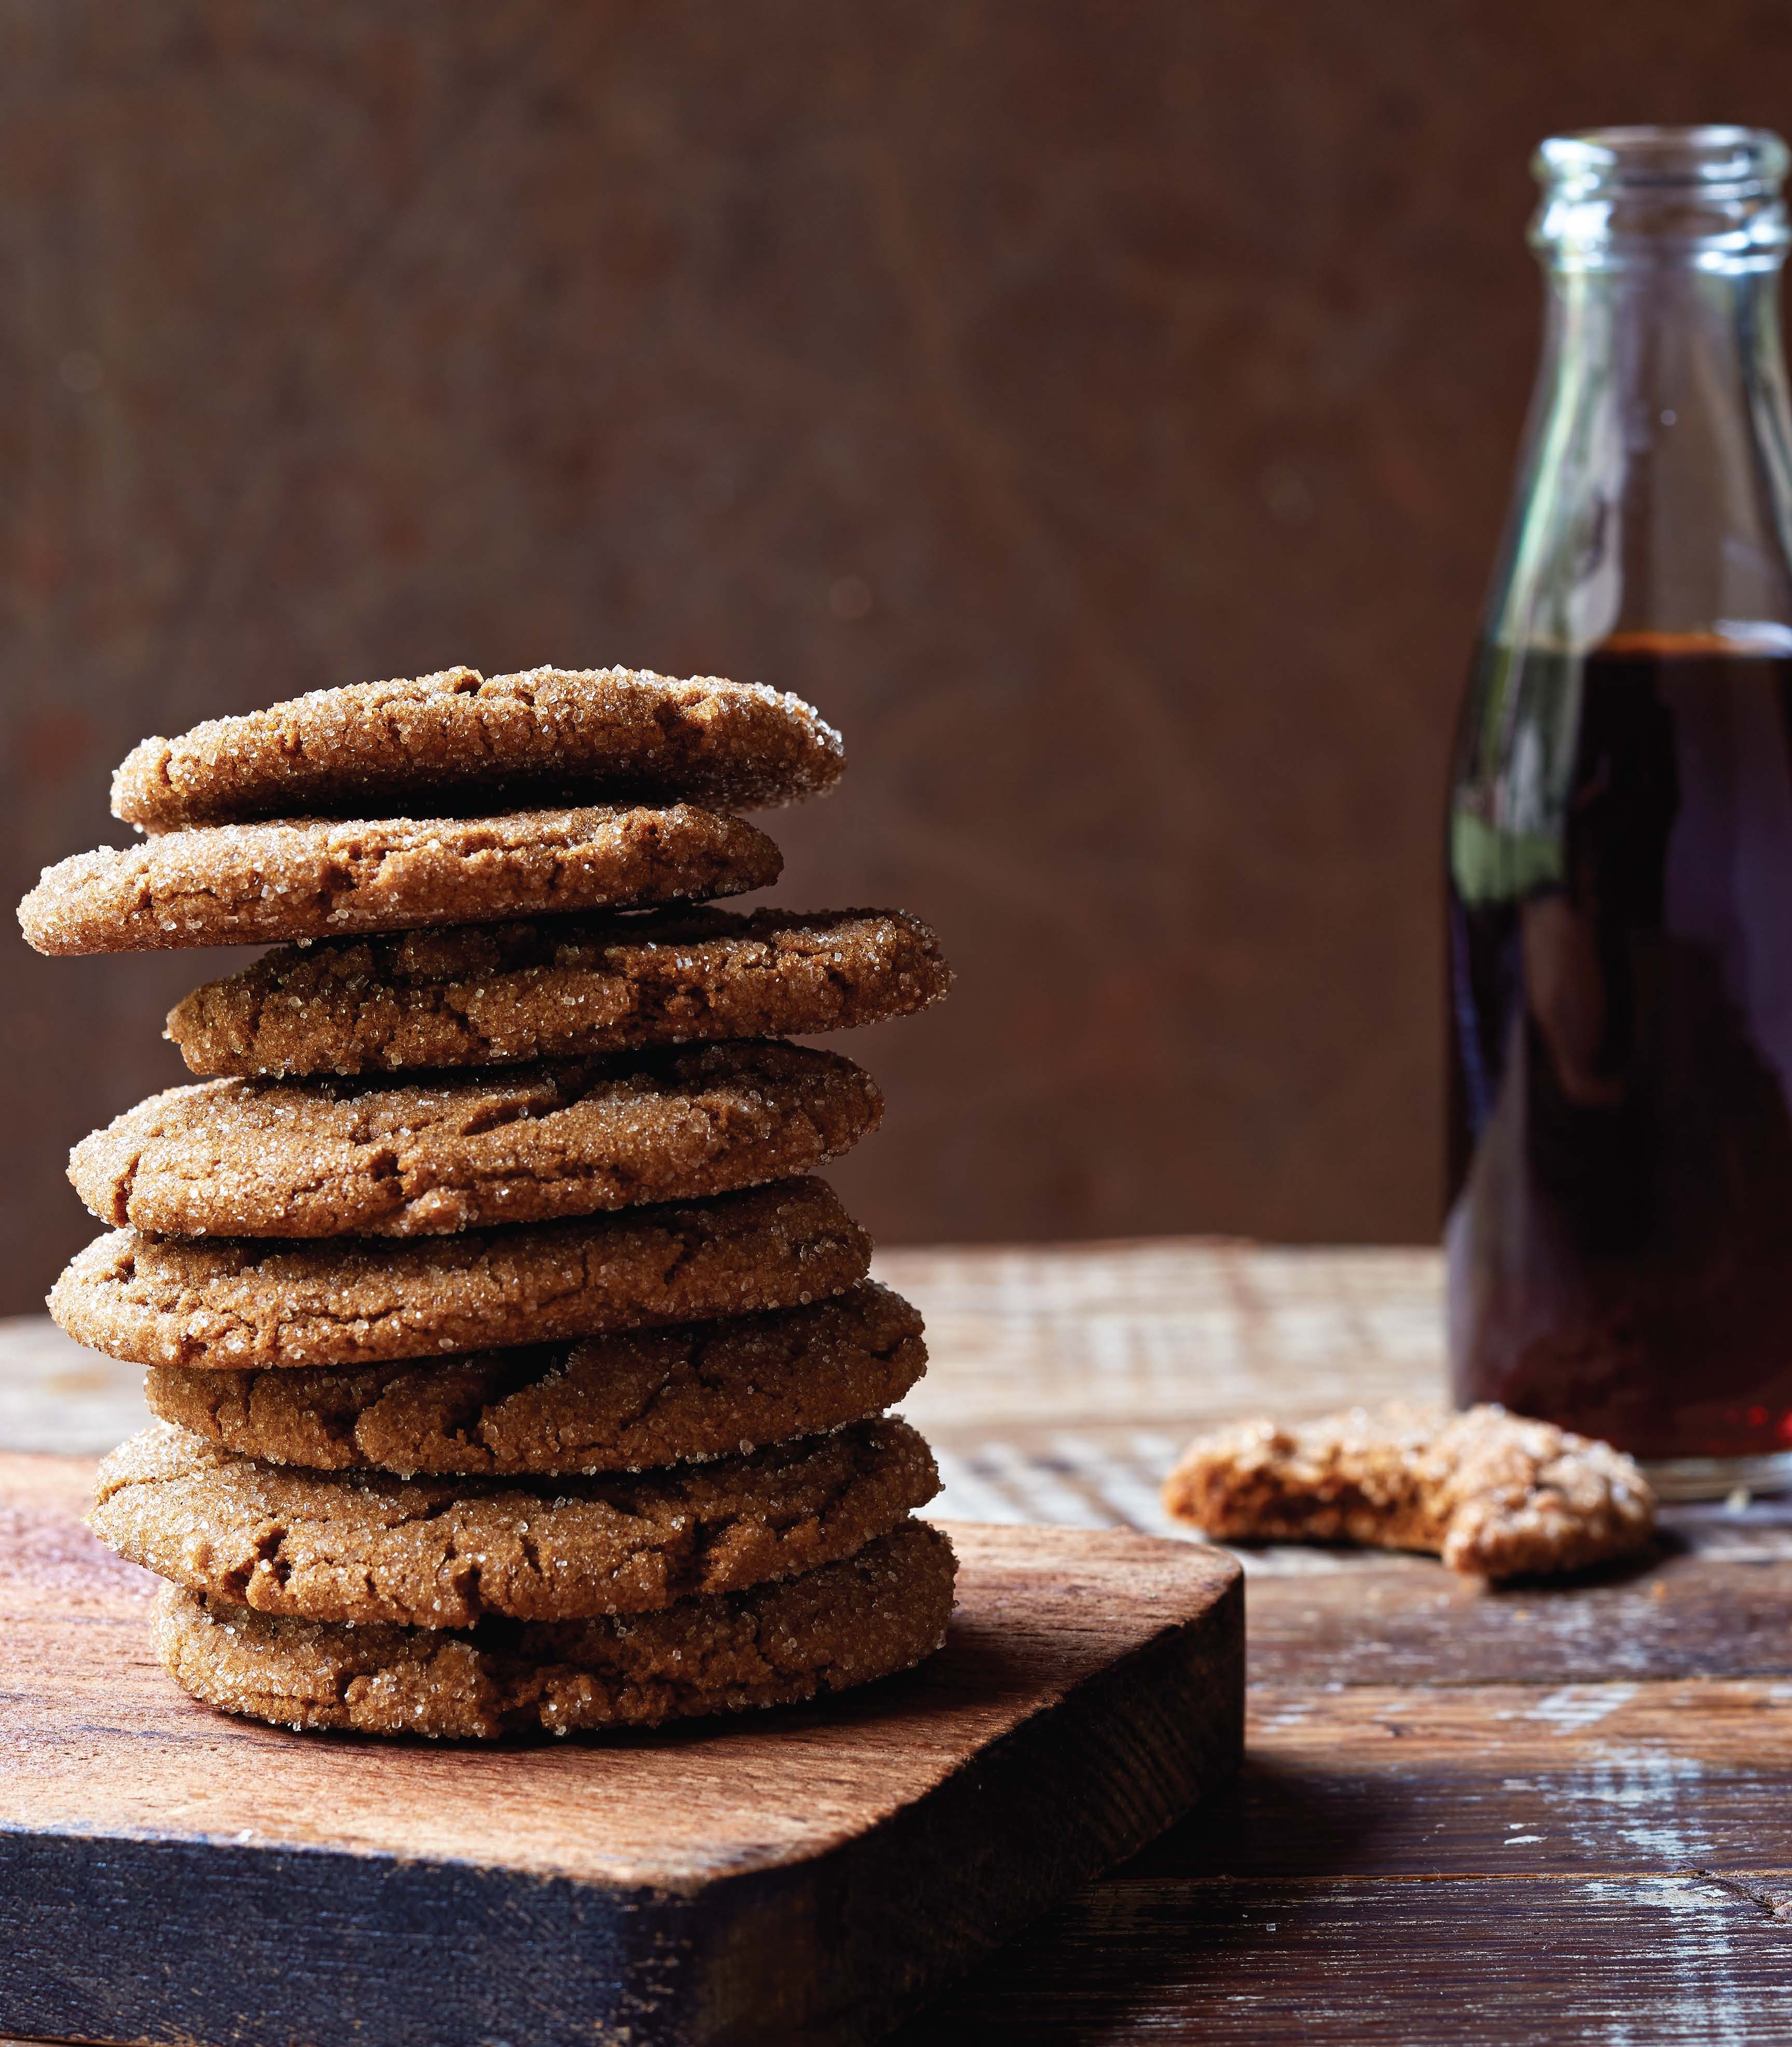 Ginger sorghum cookies (Dan Goldberg © 2015)